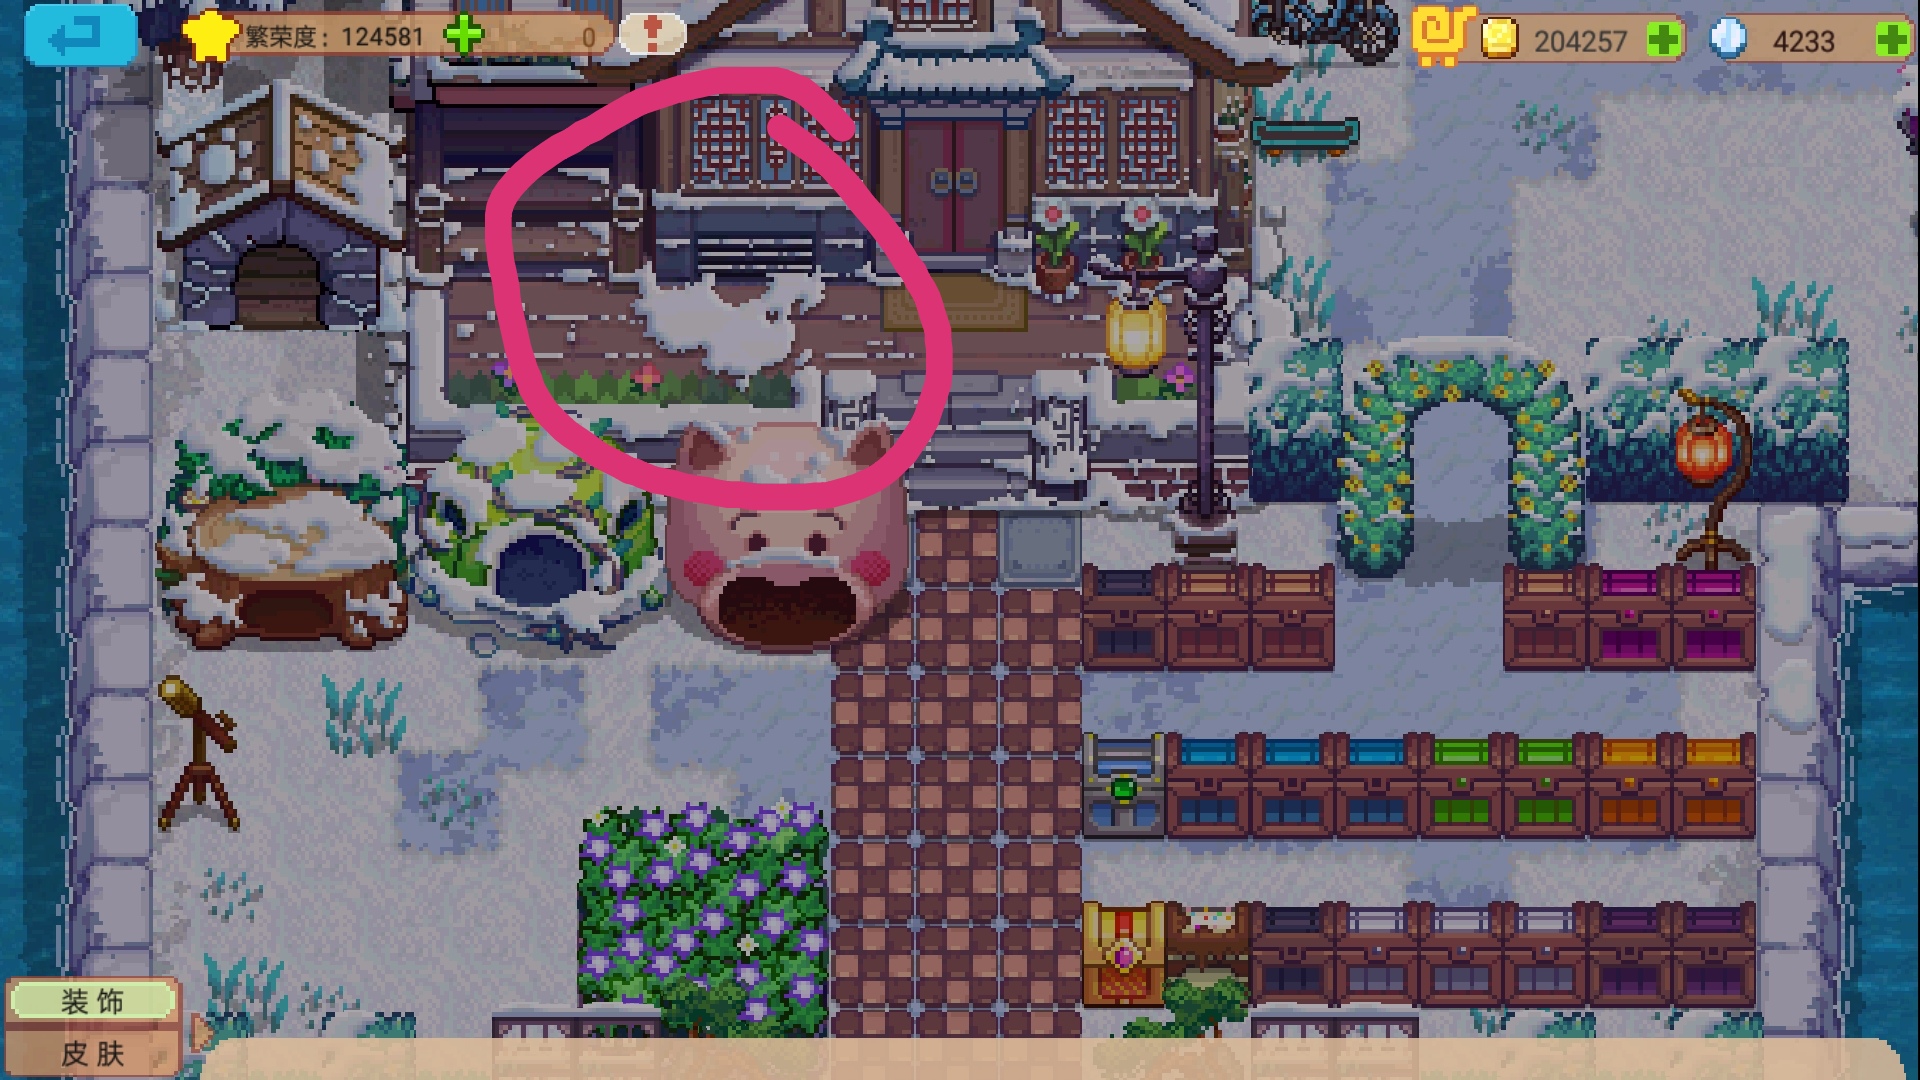 有人注意到冬天家门口的雪形状是中国版图吗 奶牛镇的小时光综合 Taptap 奶牛镇的小时光社区